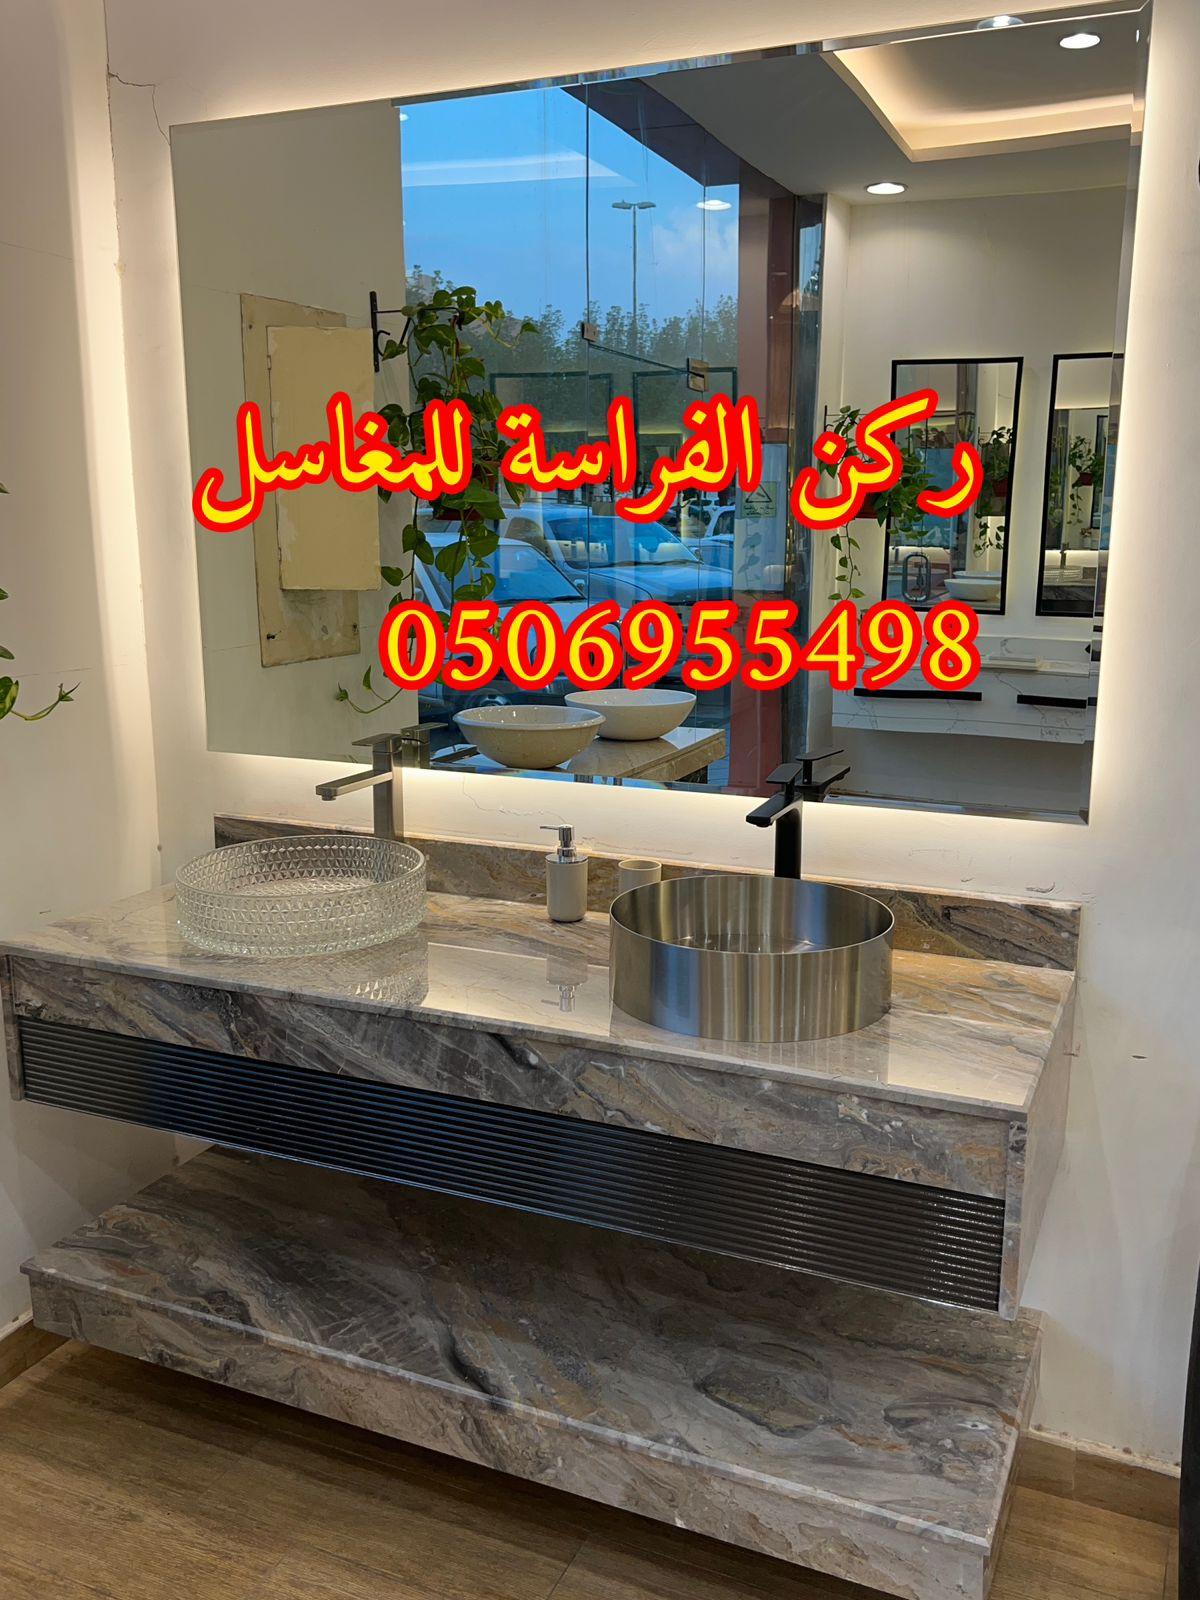 الرياض - تركيب مغاسل حمامات رخام في الرياض, 0506955498 957648828